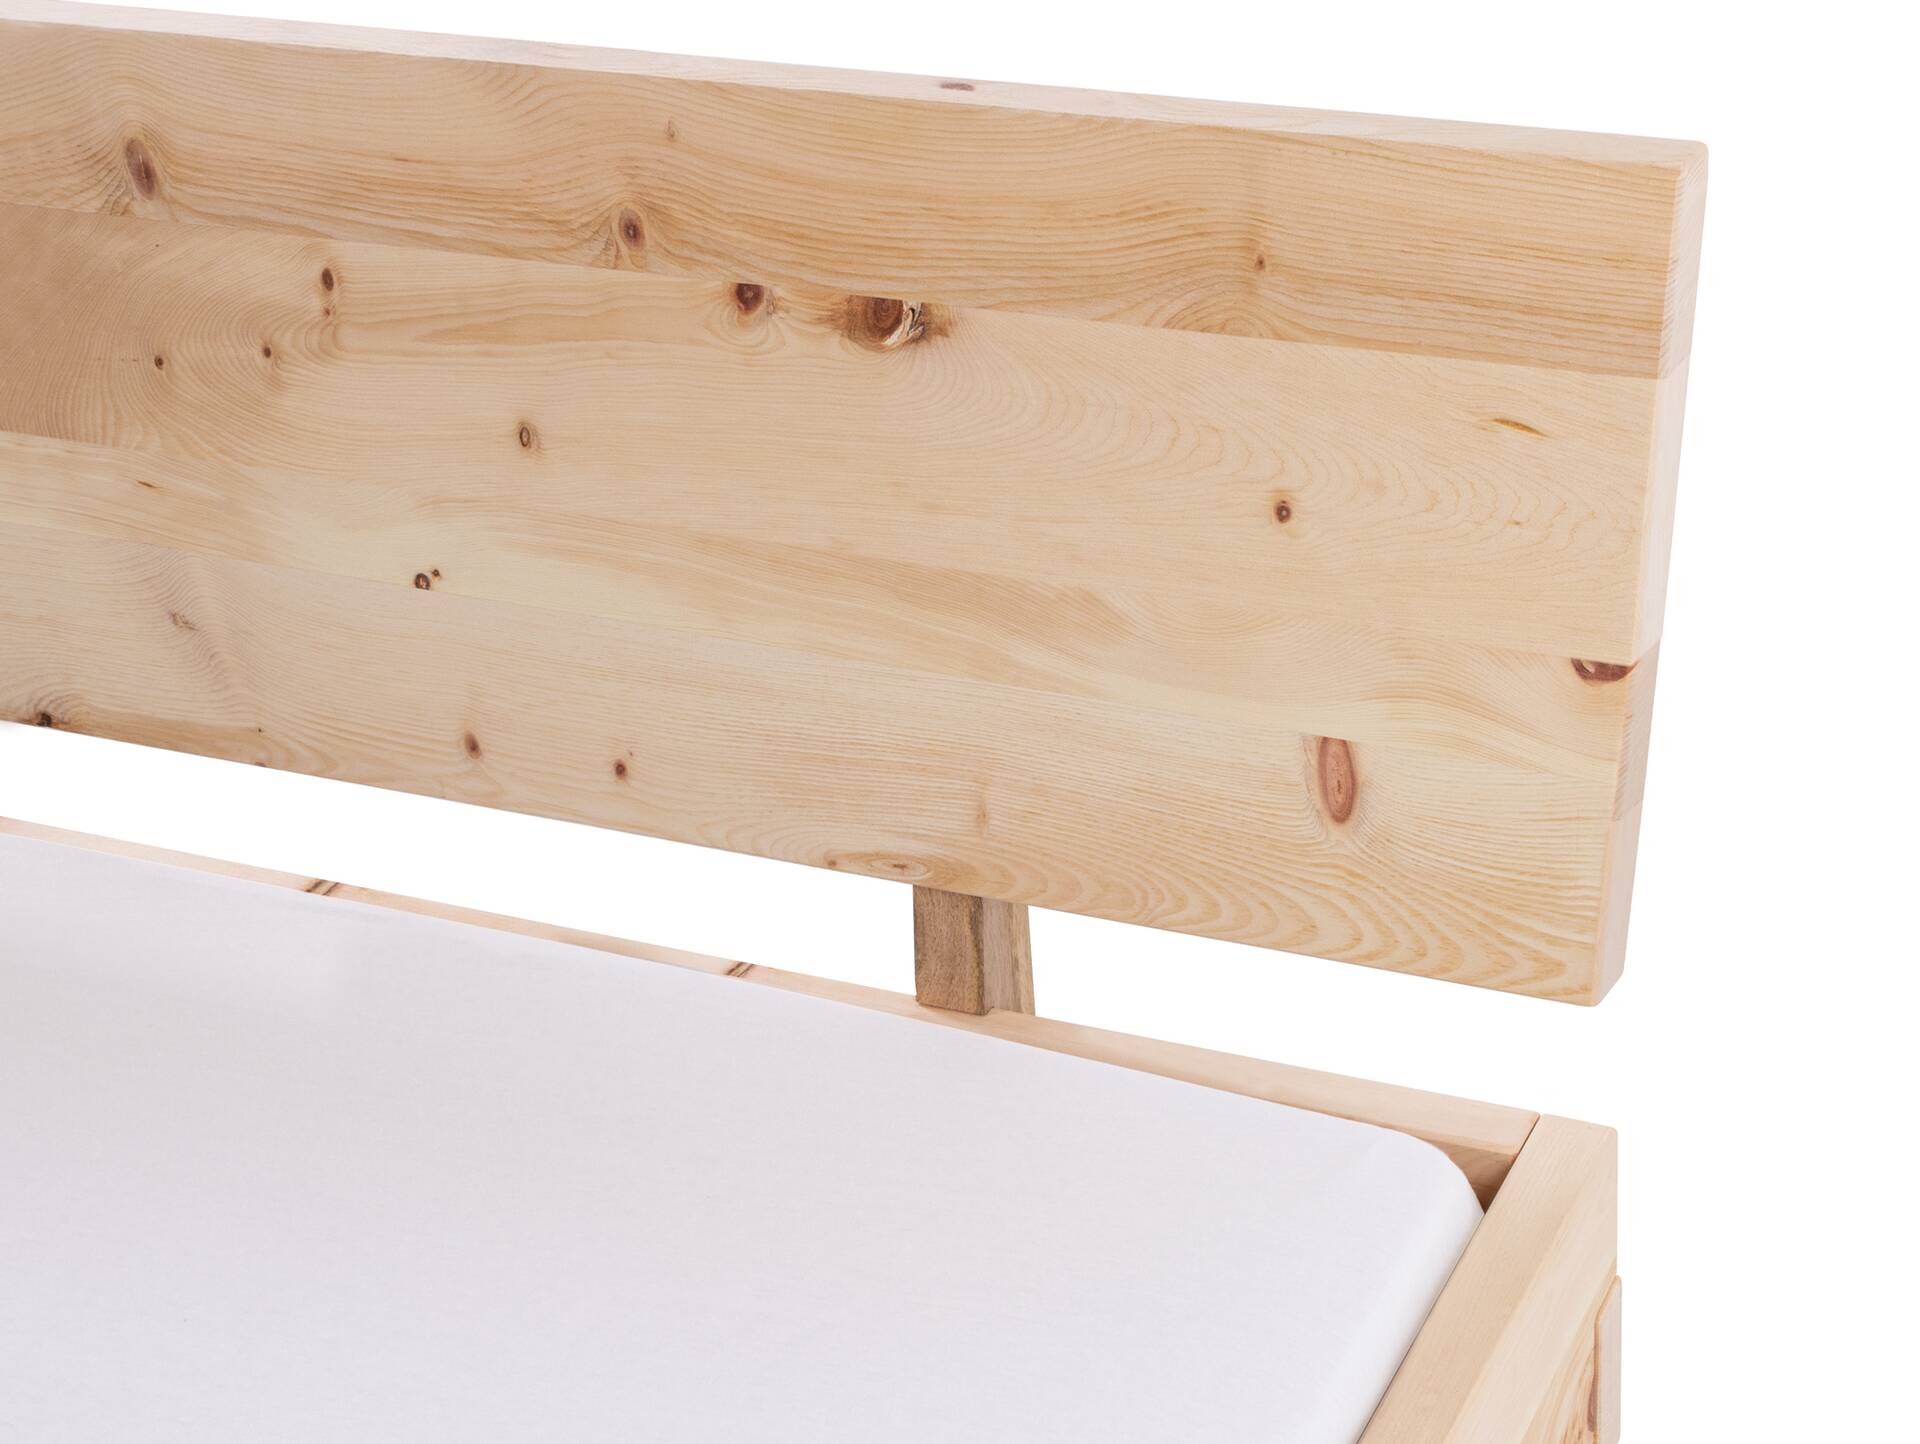 ZARUBA Zirbenbett mit Holz-Kufen/Holzkopfteil, Material Massivholz, Zirbe unbehandelt, mit/ohne Kopfteil 200 x 220 cm | mit Kopfteil